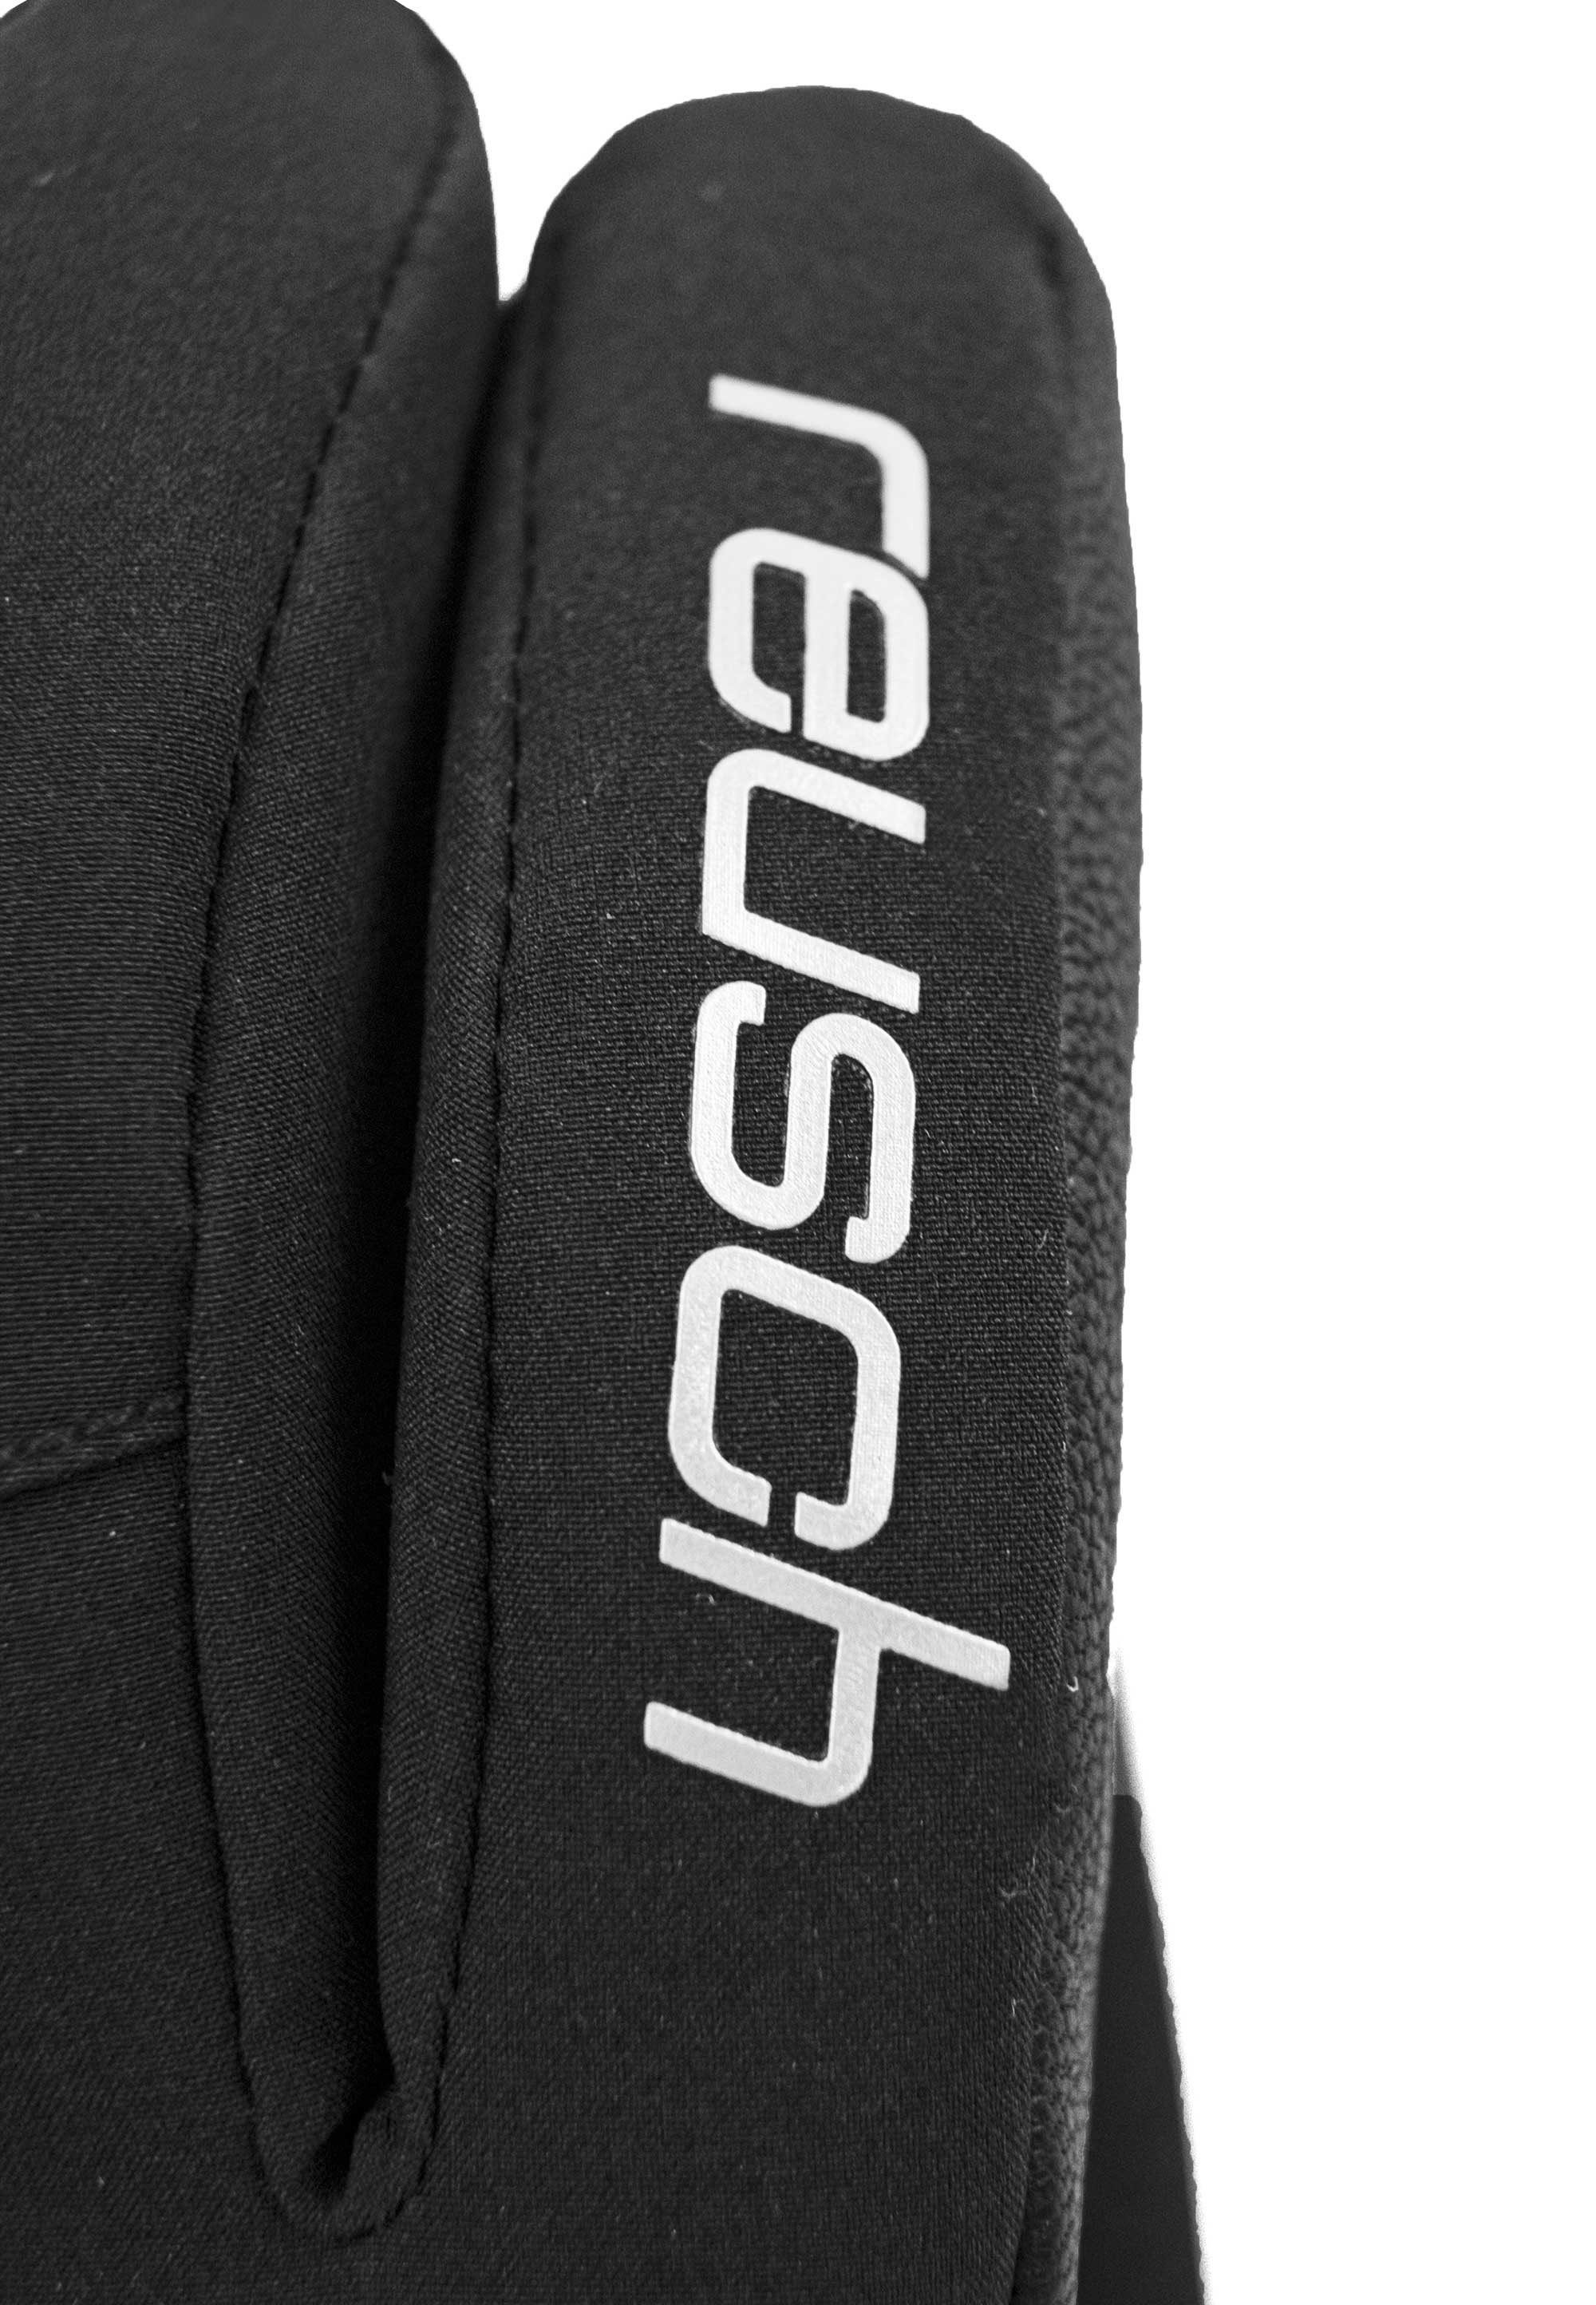 Tessa STORMBLOXX™ aus Reusch und Skihandschuhe schwarz-silberfarben Material wasserdichtem atmungsaktivem